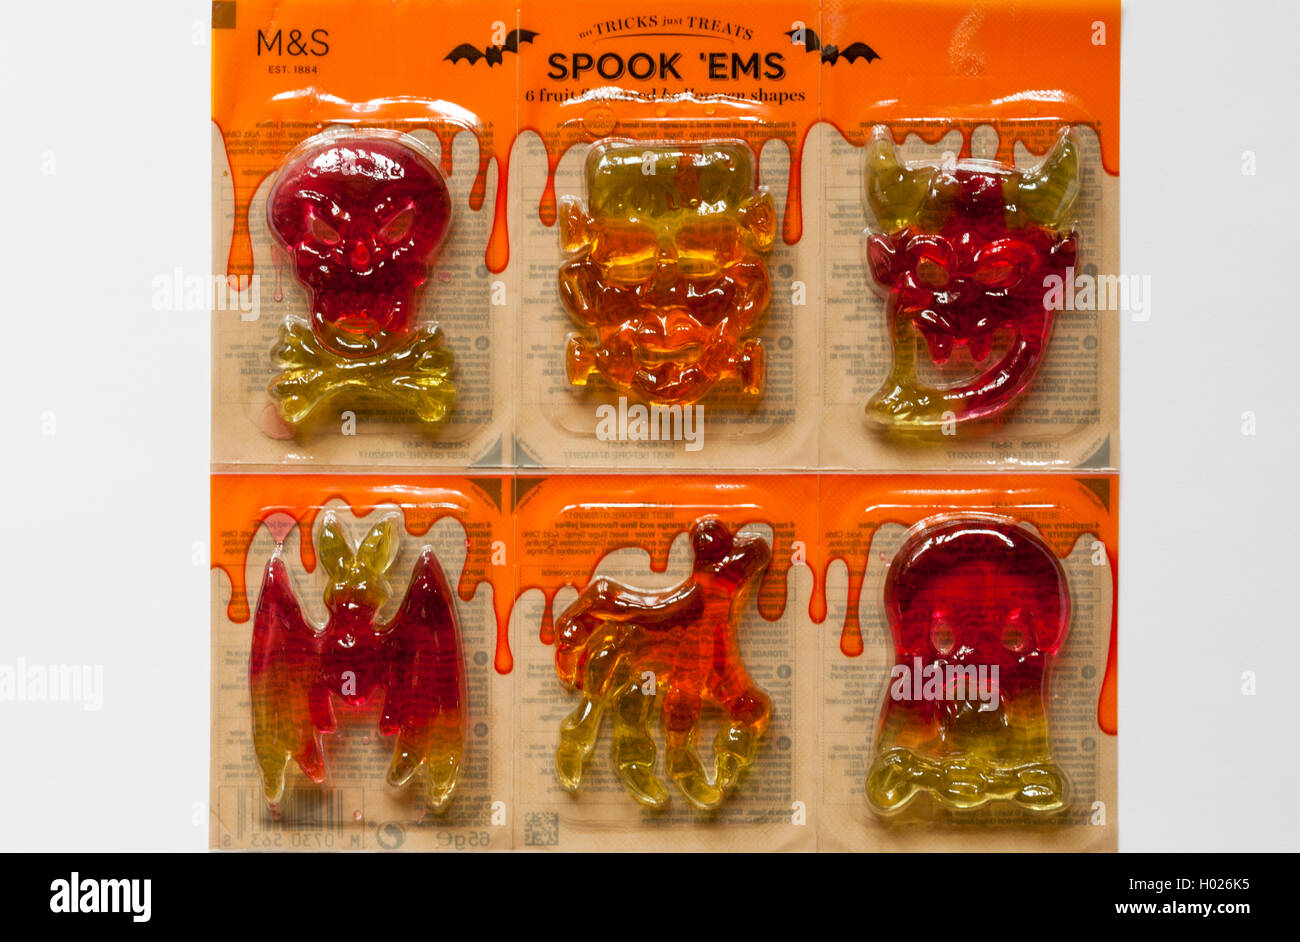 M&S keine Tricks nur behandelt M&S spook 'ems Süßigkeiten für Halloween - 6 mit Fruchtgeschmack halloween Formen Stockfoto